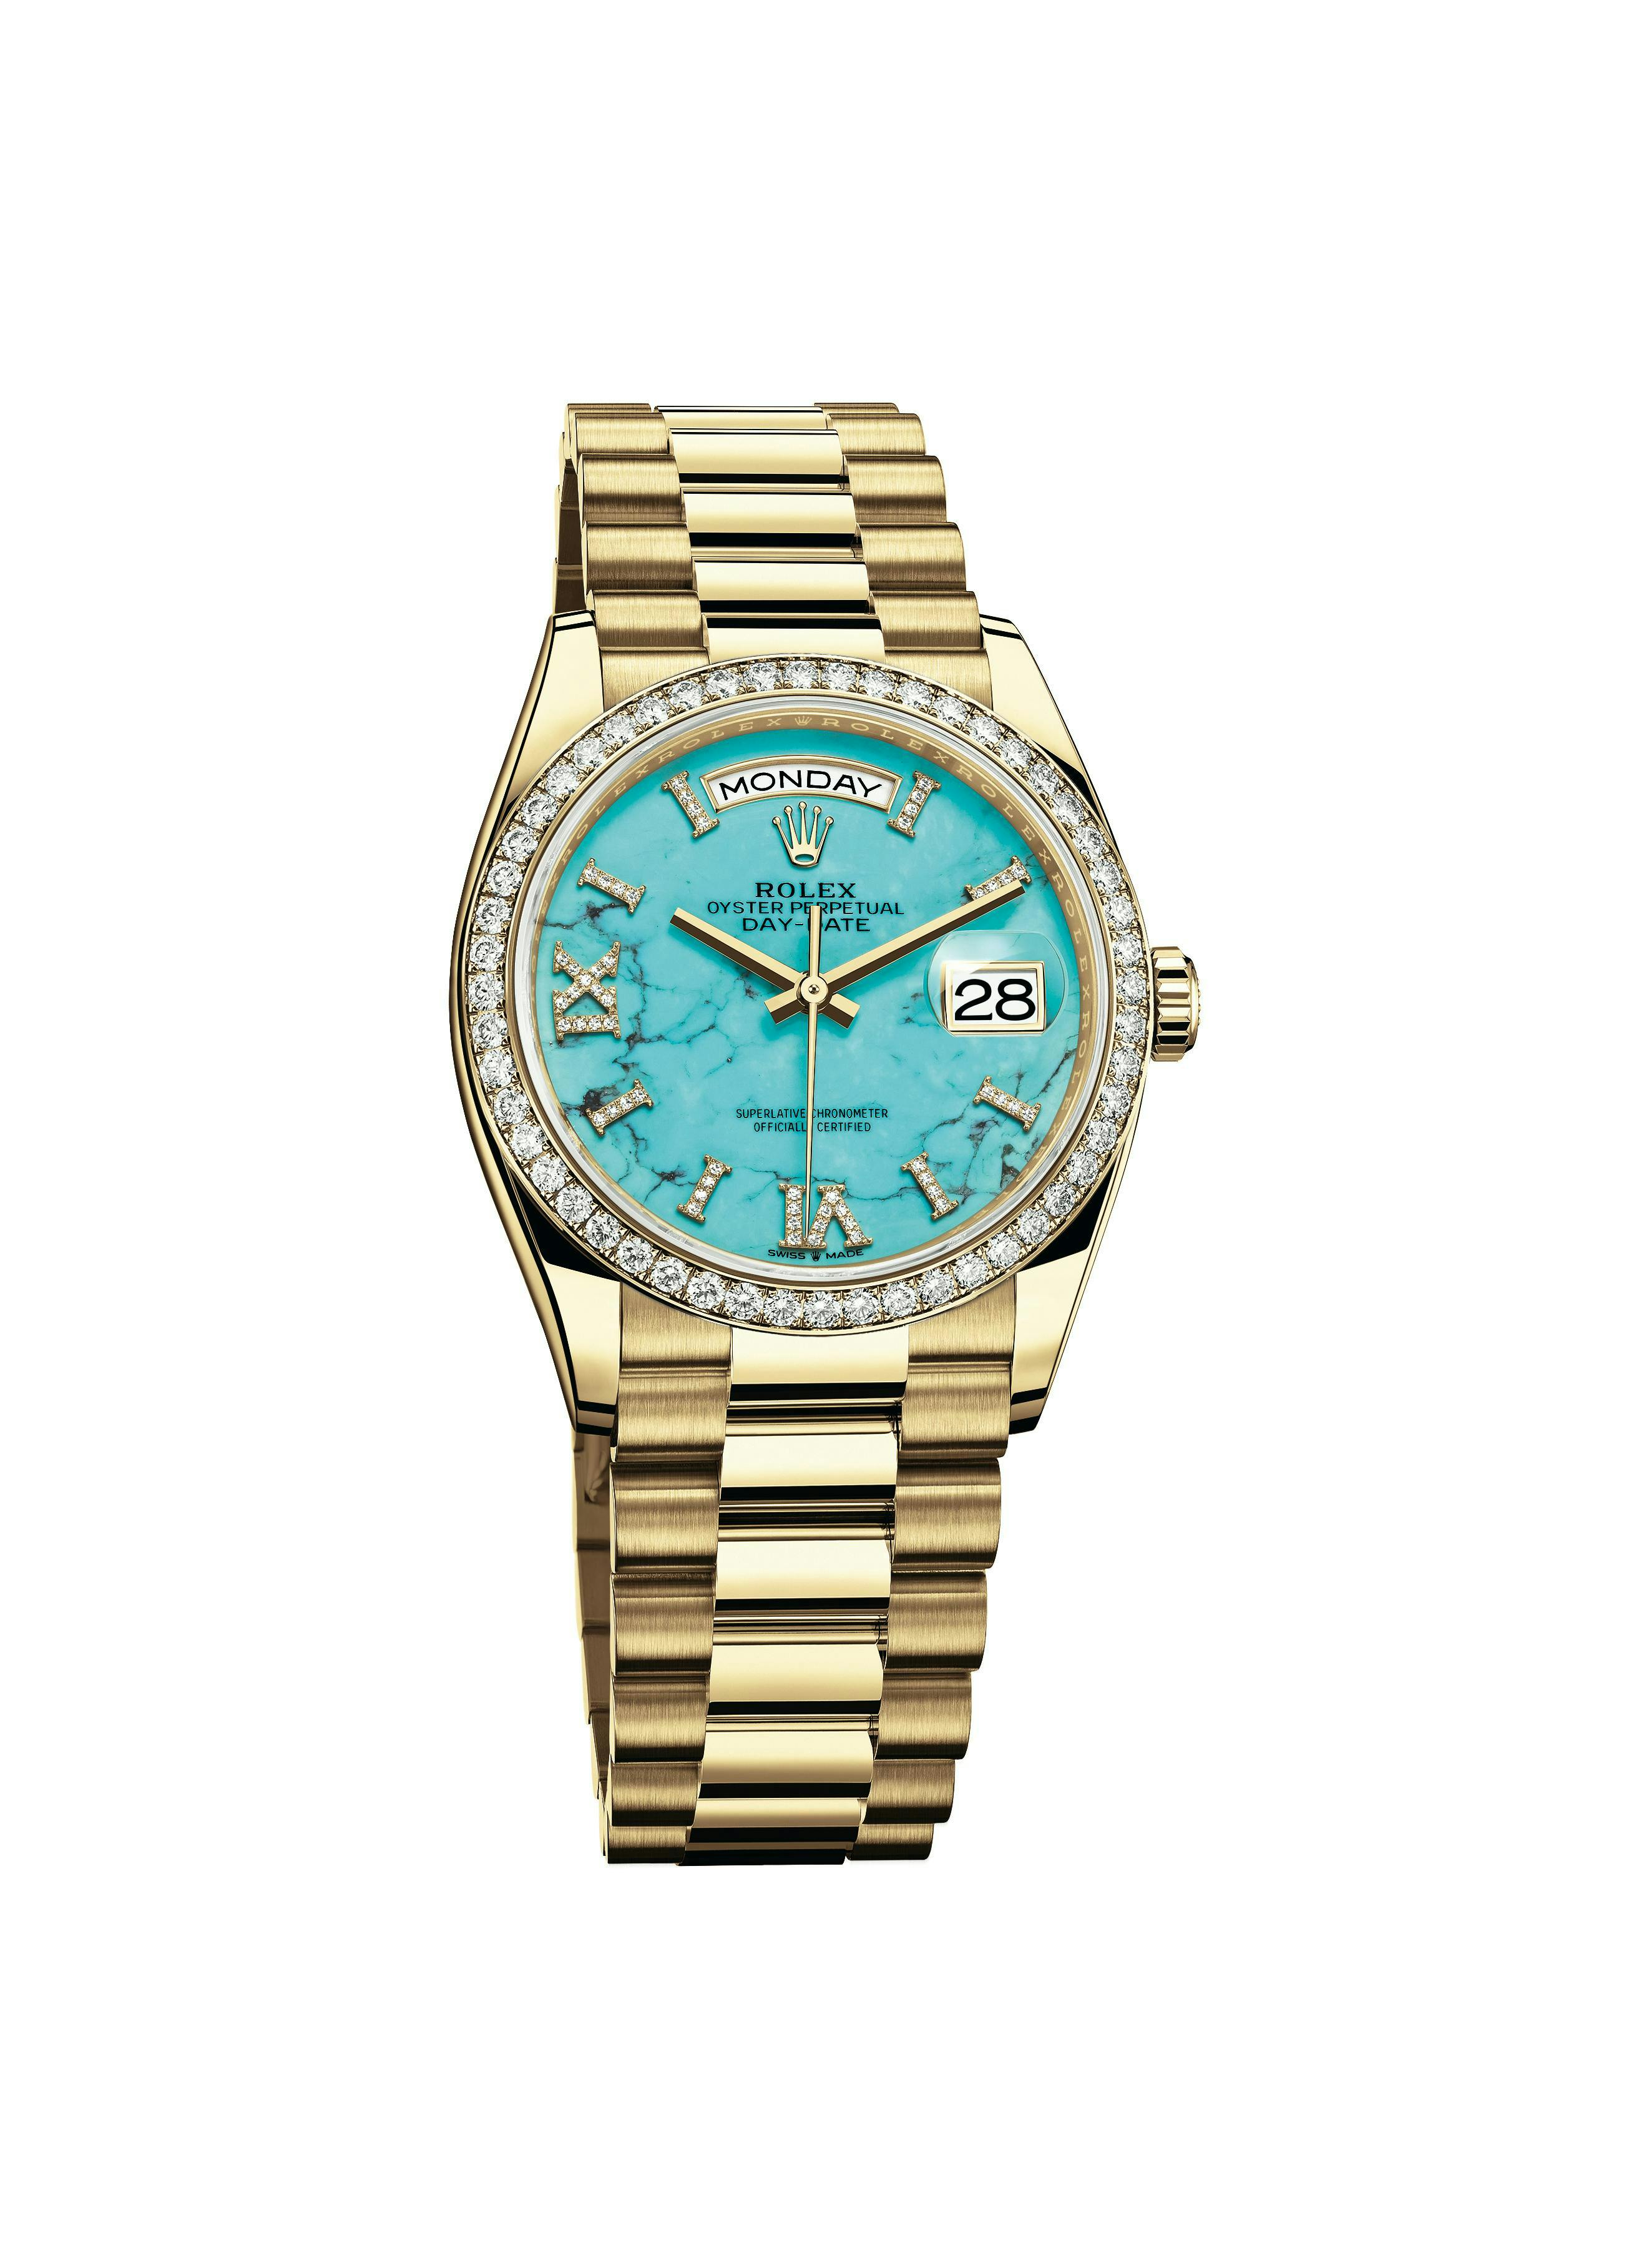 m128348rbr-0037 wristwatch